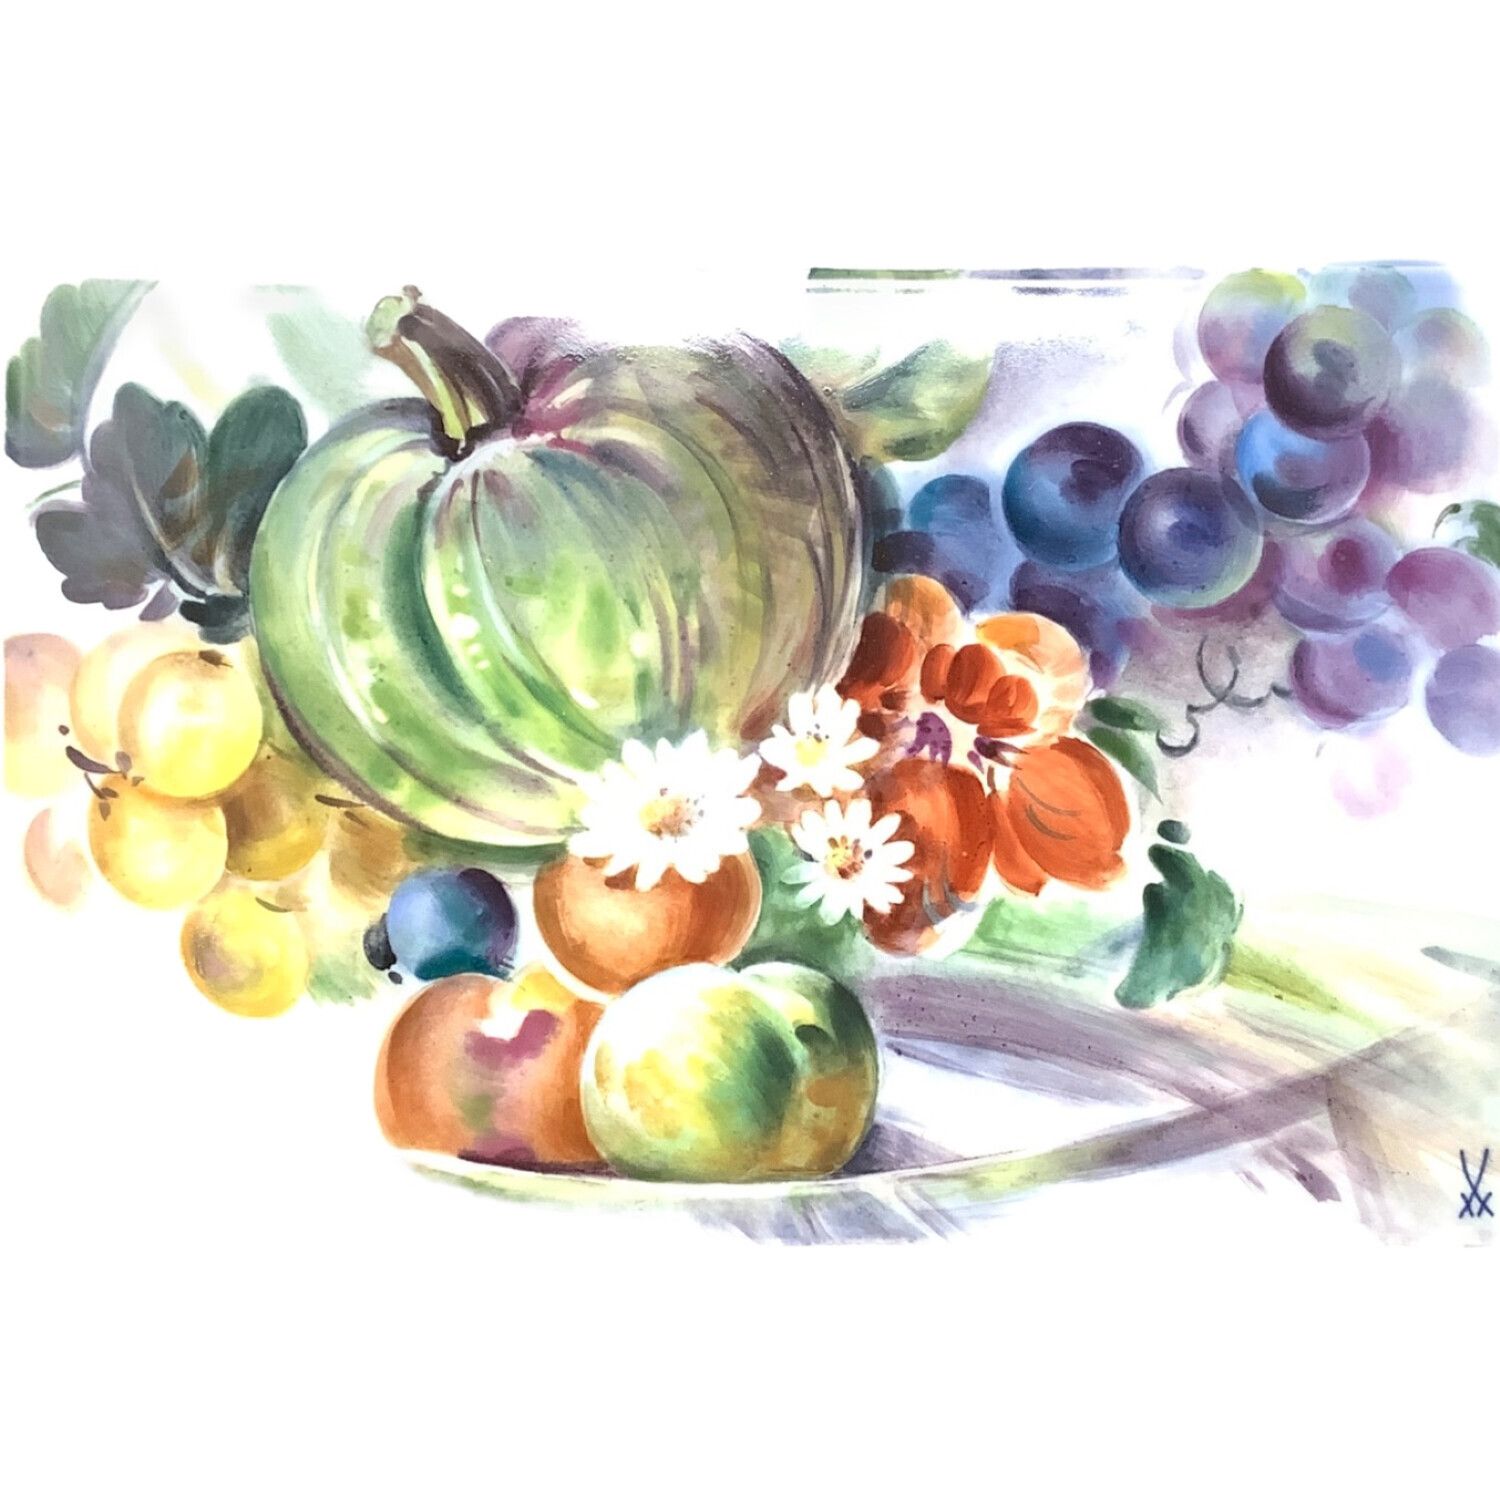 マイセン 「卓上の果物」H・ブレチュナイダー 陶板画 14.5センチ - 陶芸